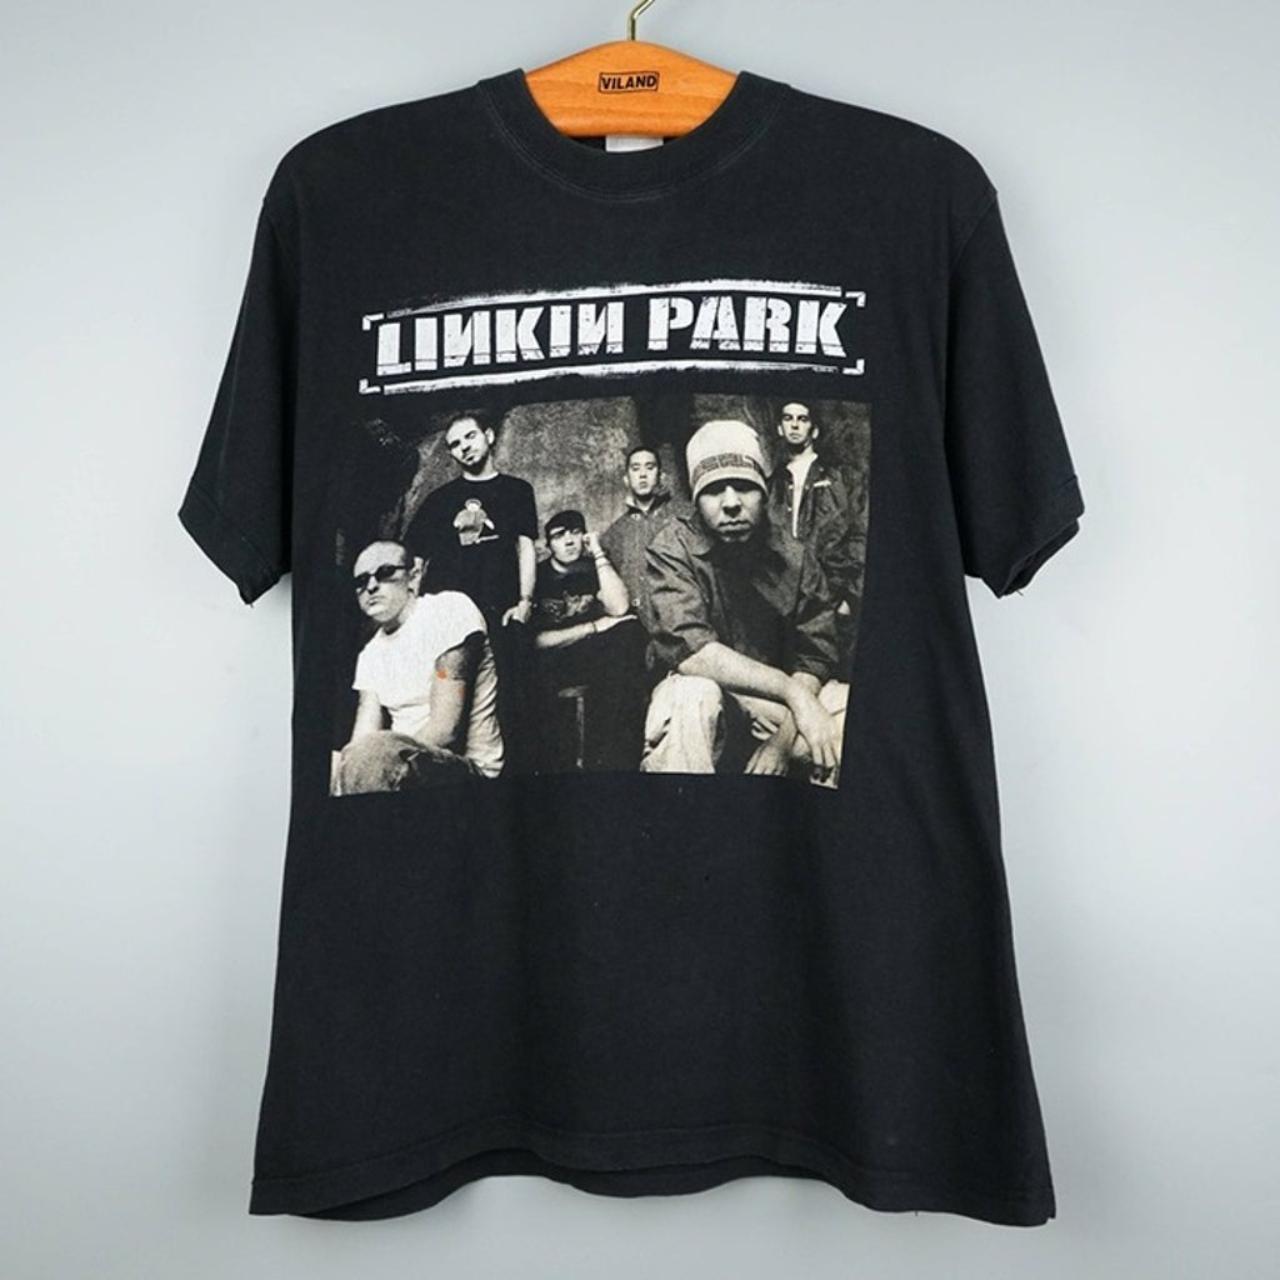 Linkin Park t shirt - Depop